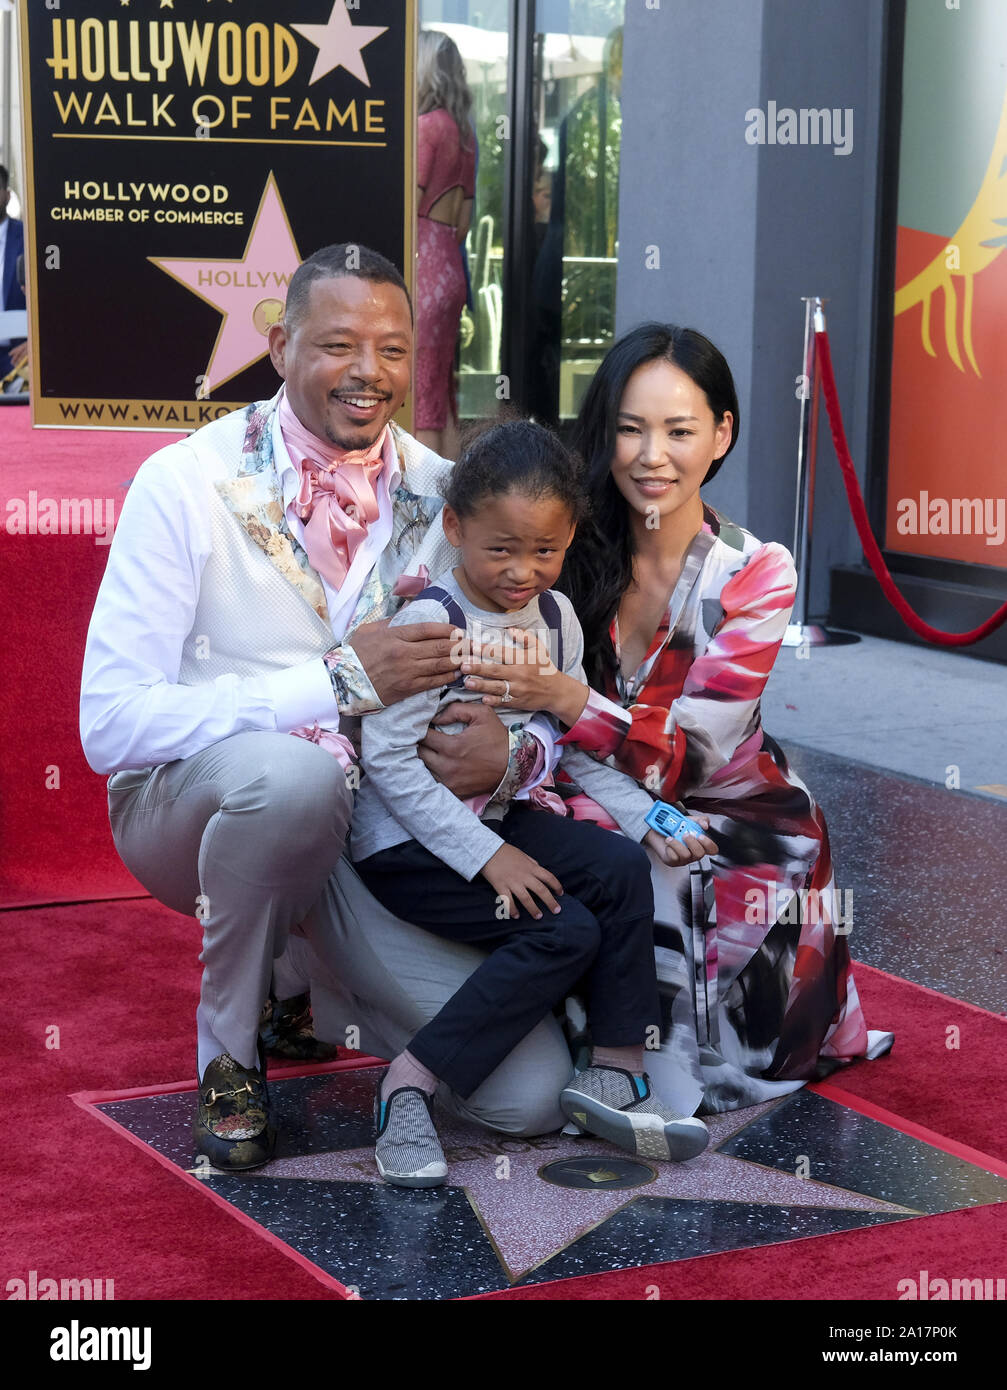 El 24 de septiembre de 2019, Los Angeles, California, U.S: el actor Terrence Howard y esposa Miranda Pak con sus niños a asistir a la ceremonia de su estrella en el